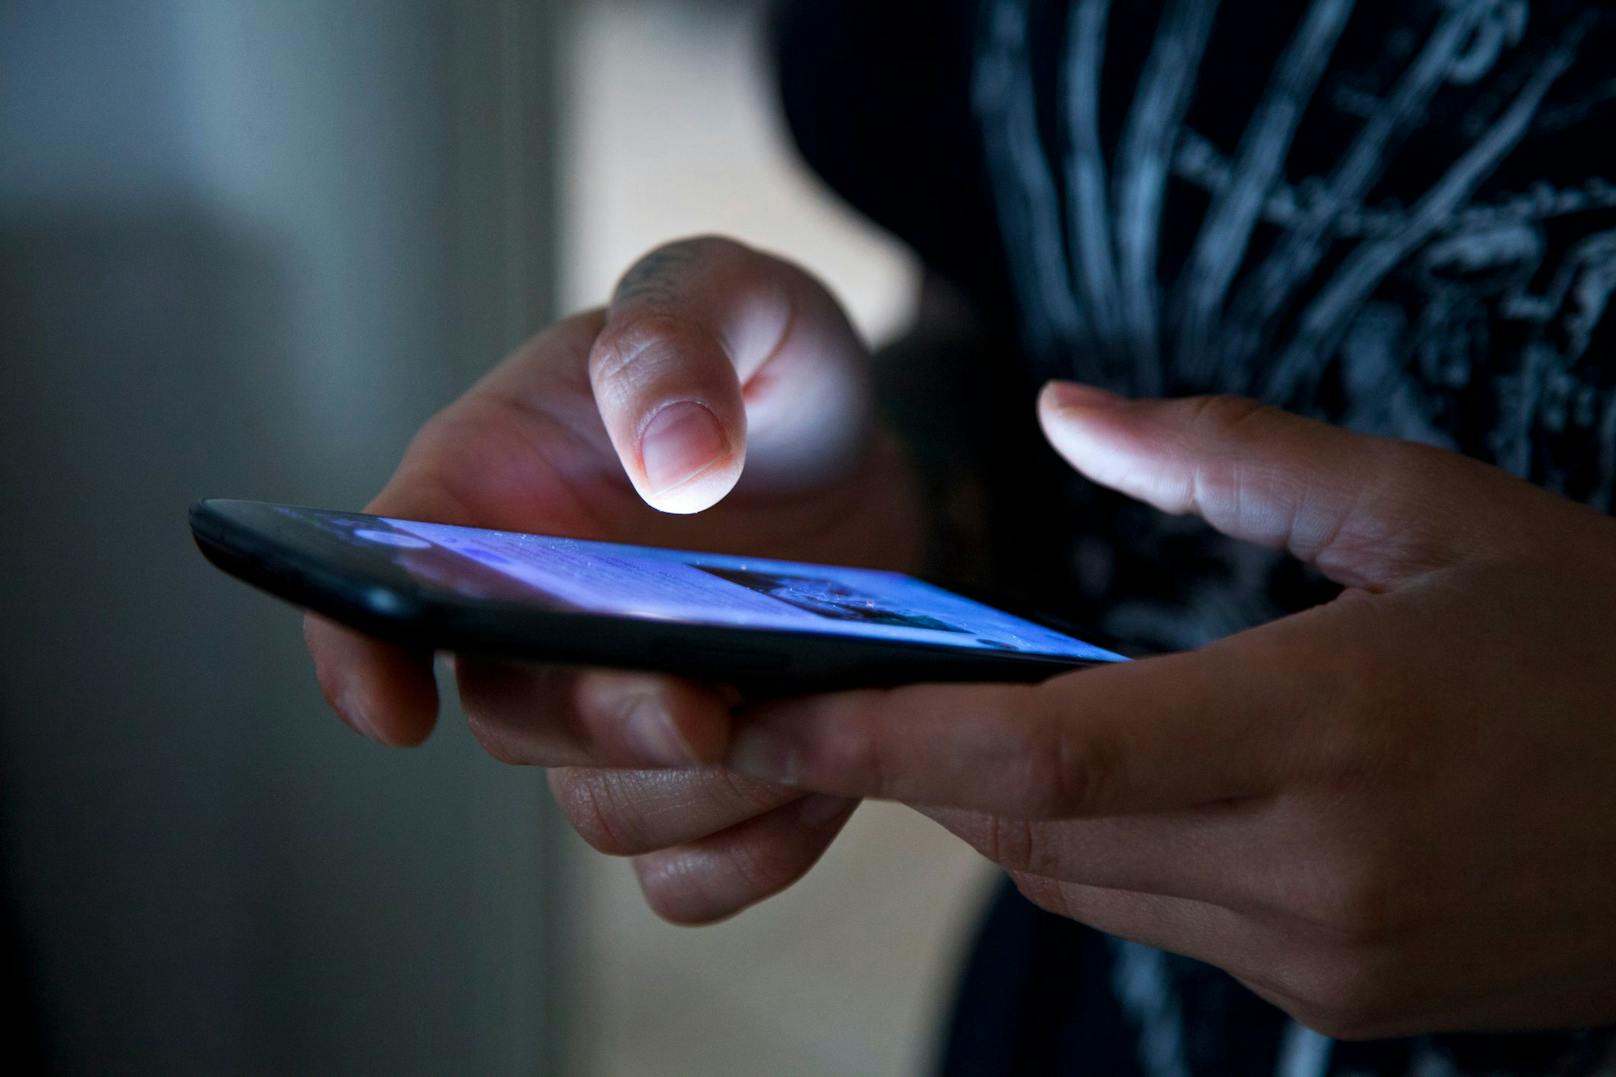 Anwälte fordern strengere Regeln für Handy-Auswertung